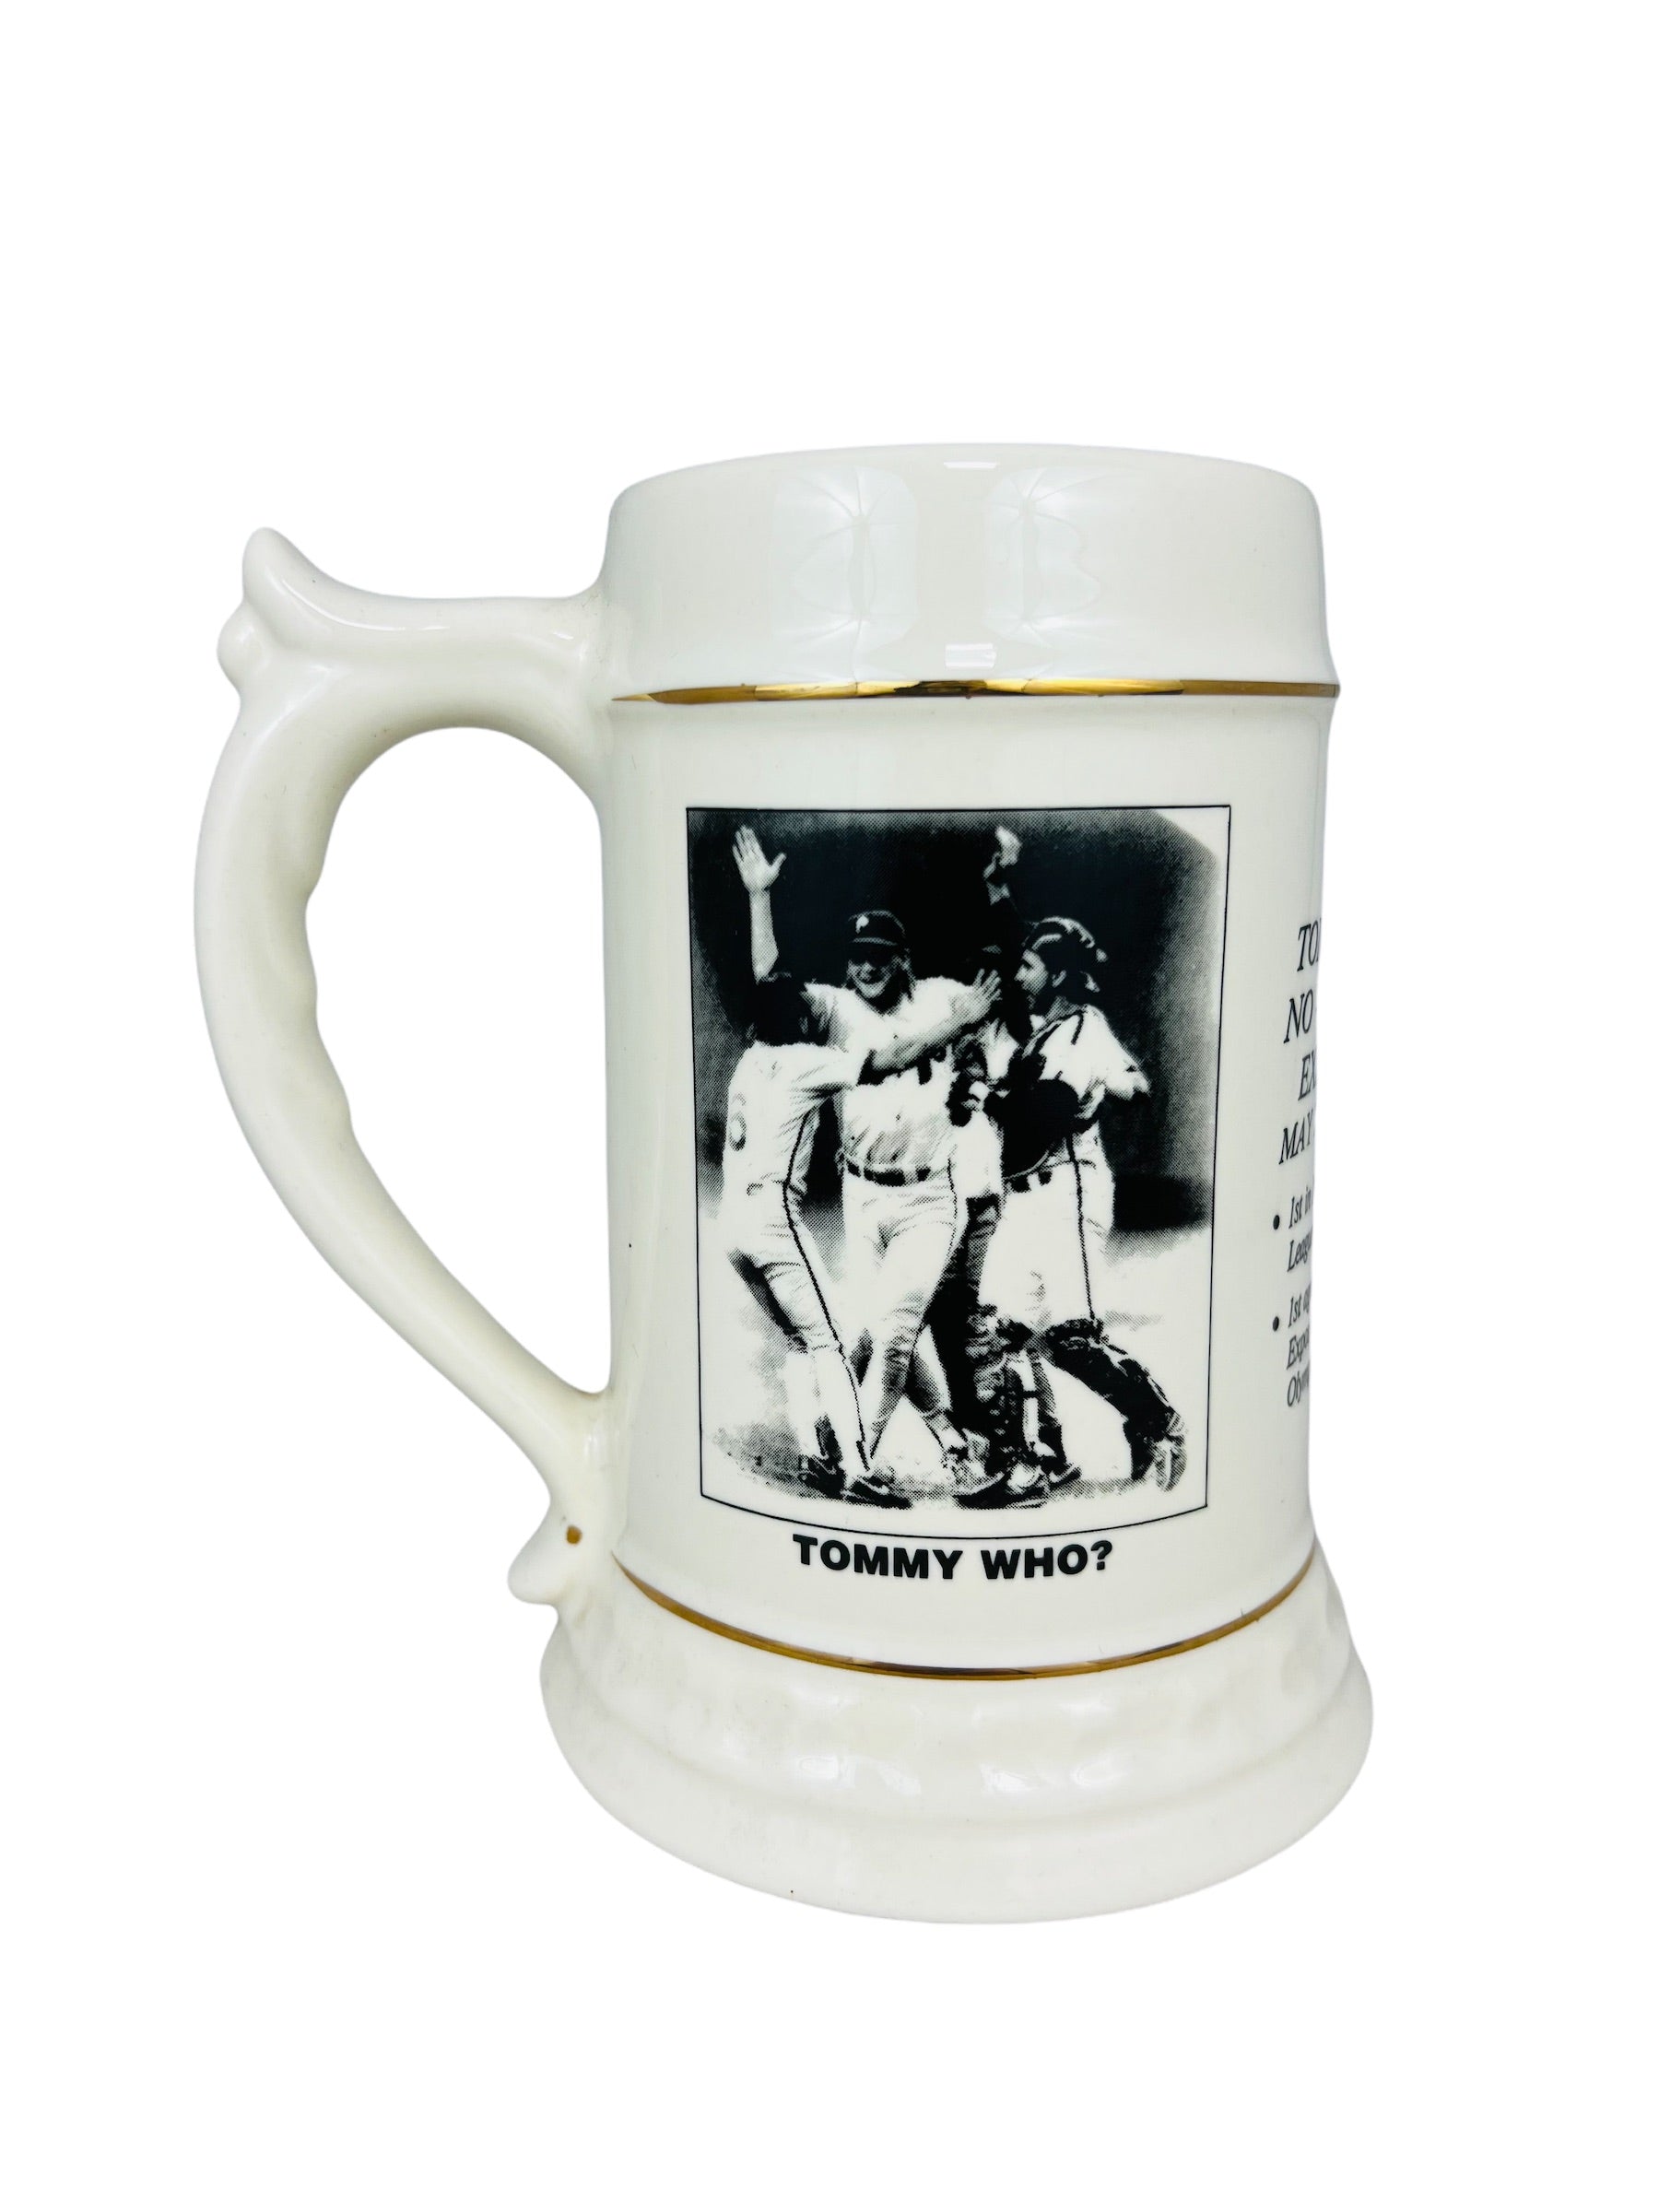 Stanley Beer Mug $14.97